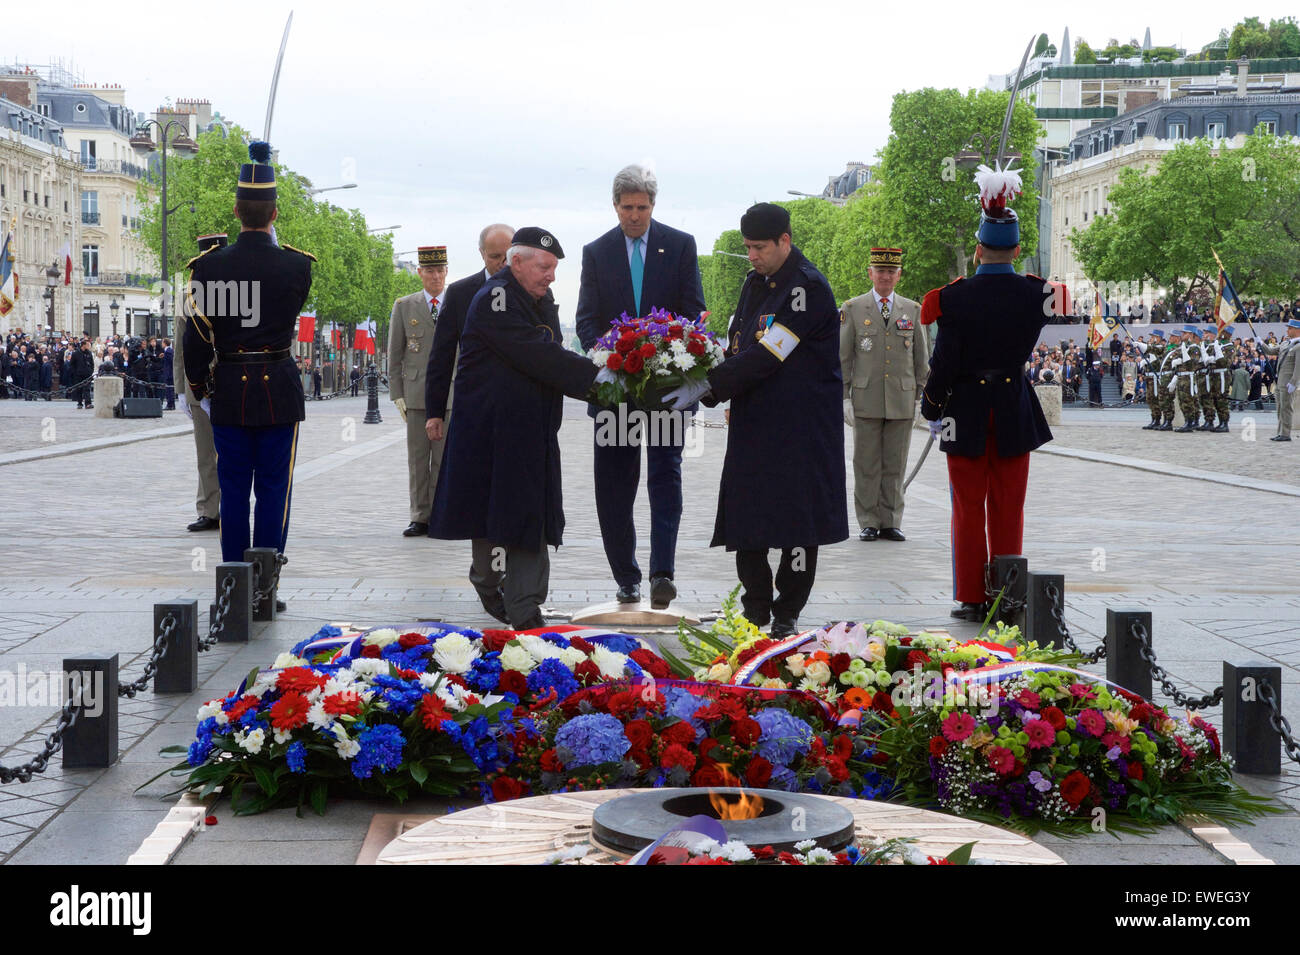 US-Außenminister John Kerry legt einen Kranz nieder während einer Gedenkfeier zum 70. Jahrestag der VE-Tag in Paris, Frankreich, am 8. Mai 2015. Stockfoto